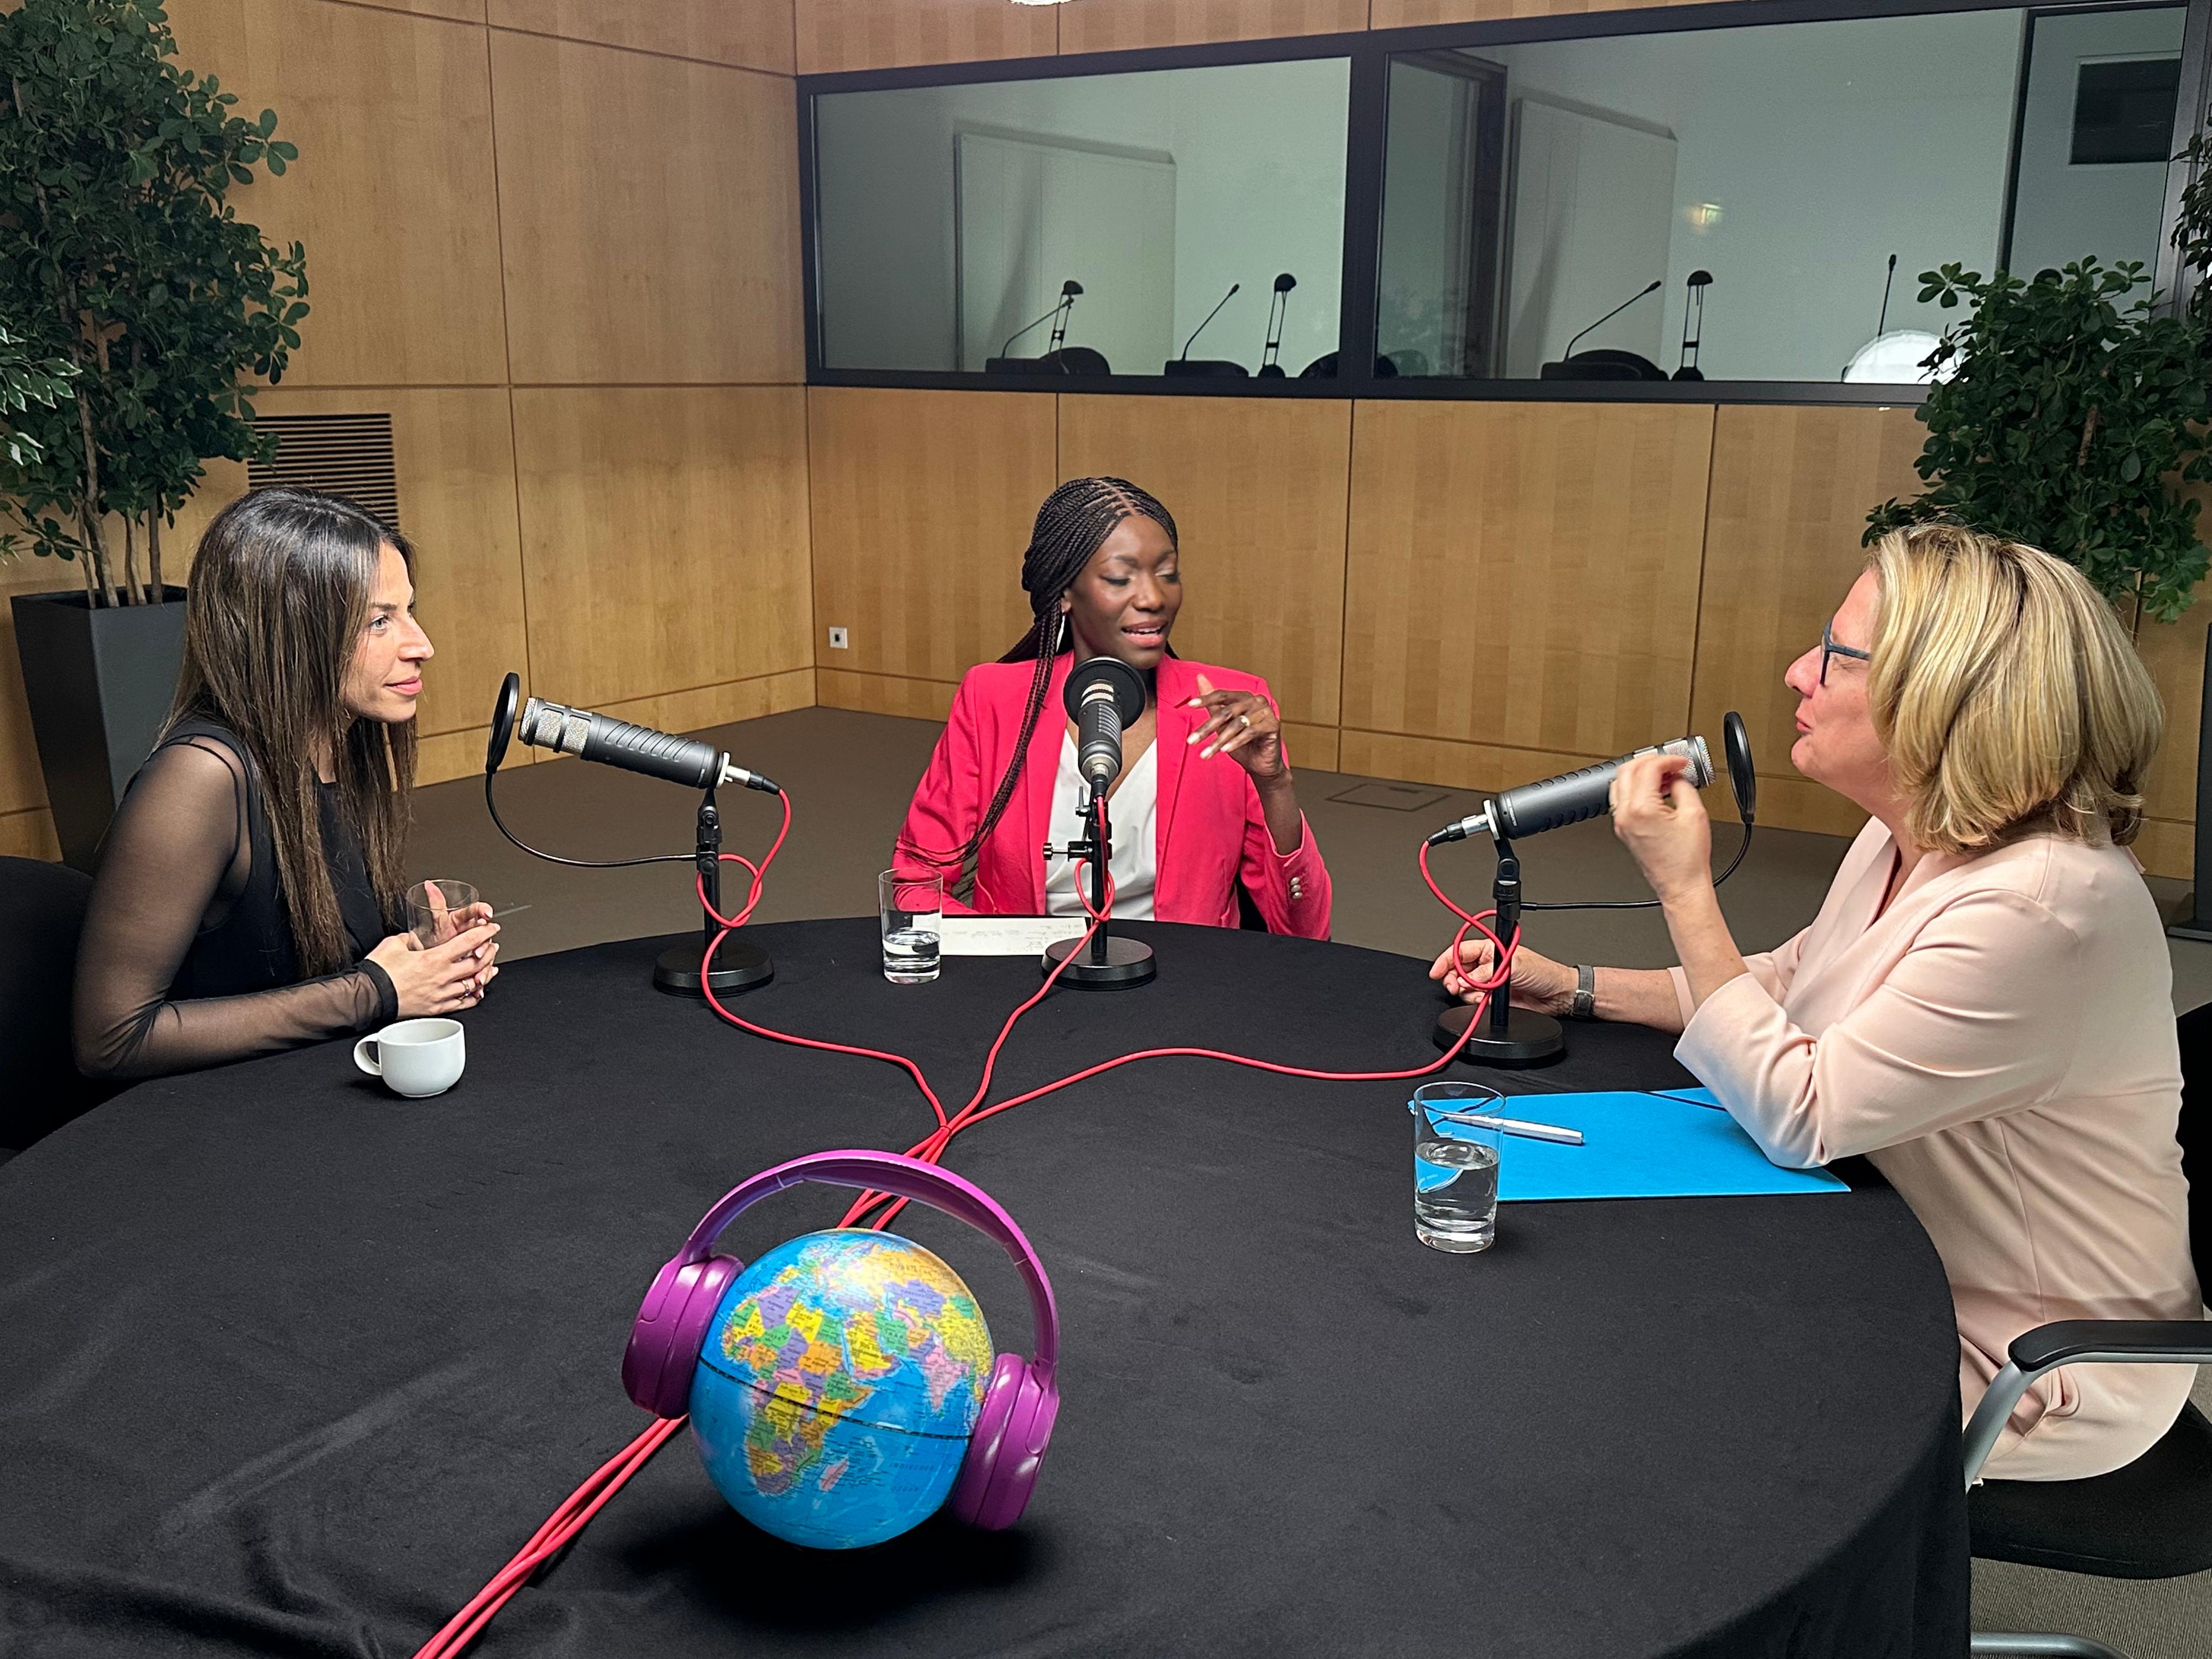  Entwicklungsministerin Svenja Schulze (rechts), Comedienne Negah Amiri (links) und Moderatorin Liz Shoo bei der Aufzeichnung der 17. Folge des BMZ-Podcasts Entwicklungssache zum Thema "Starke Frauen weltweit hörbar machen!"